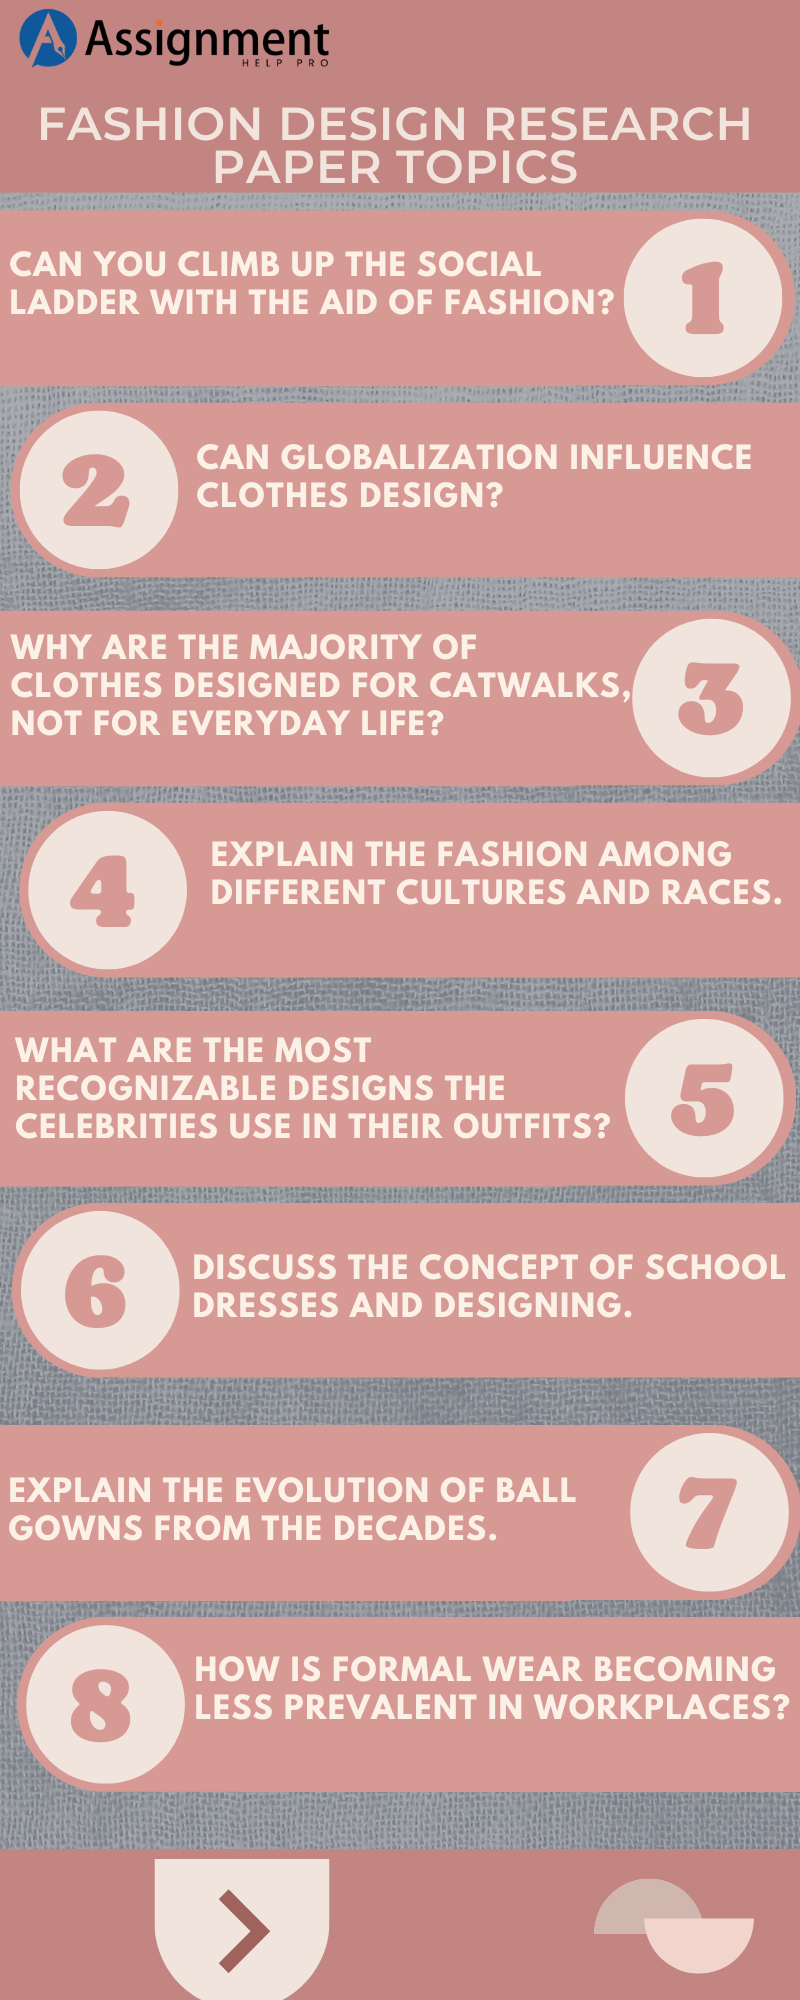 Fashion Design Research Paper Topics